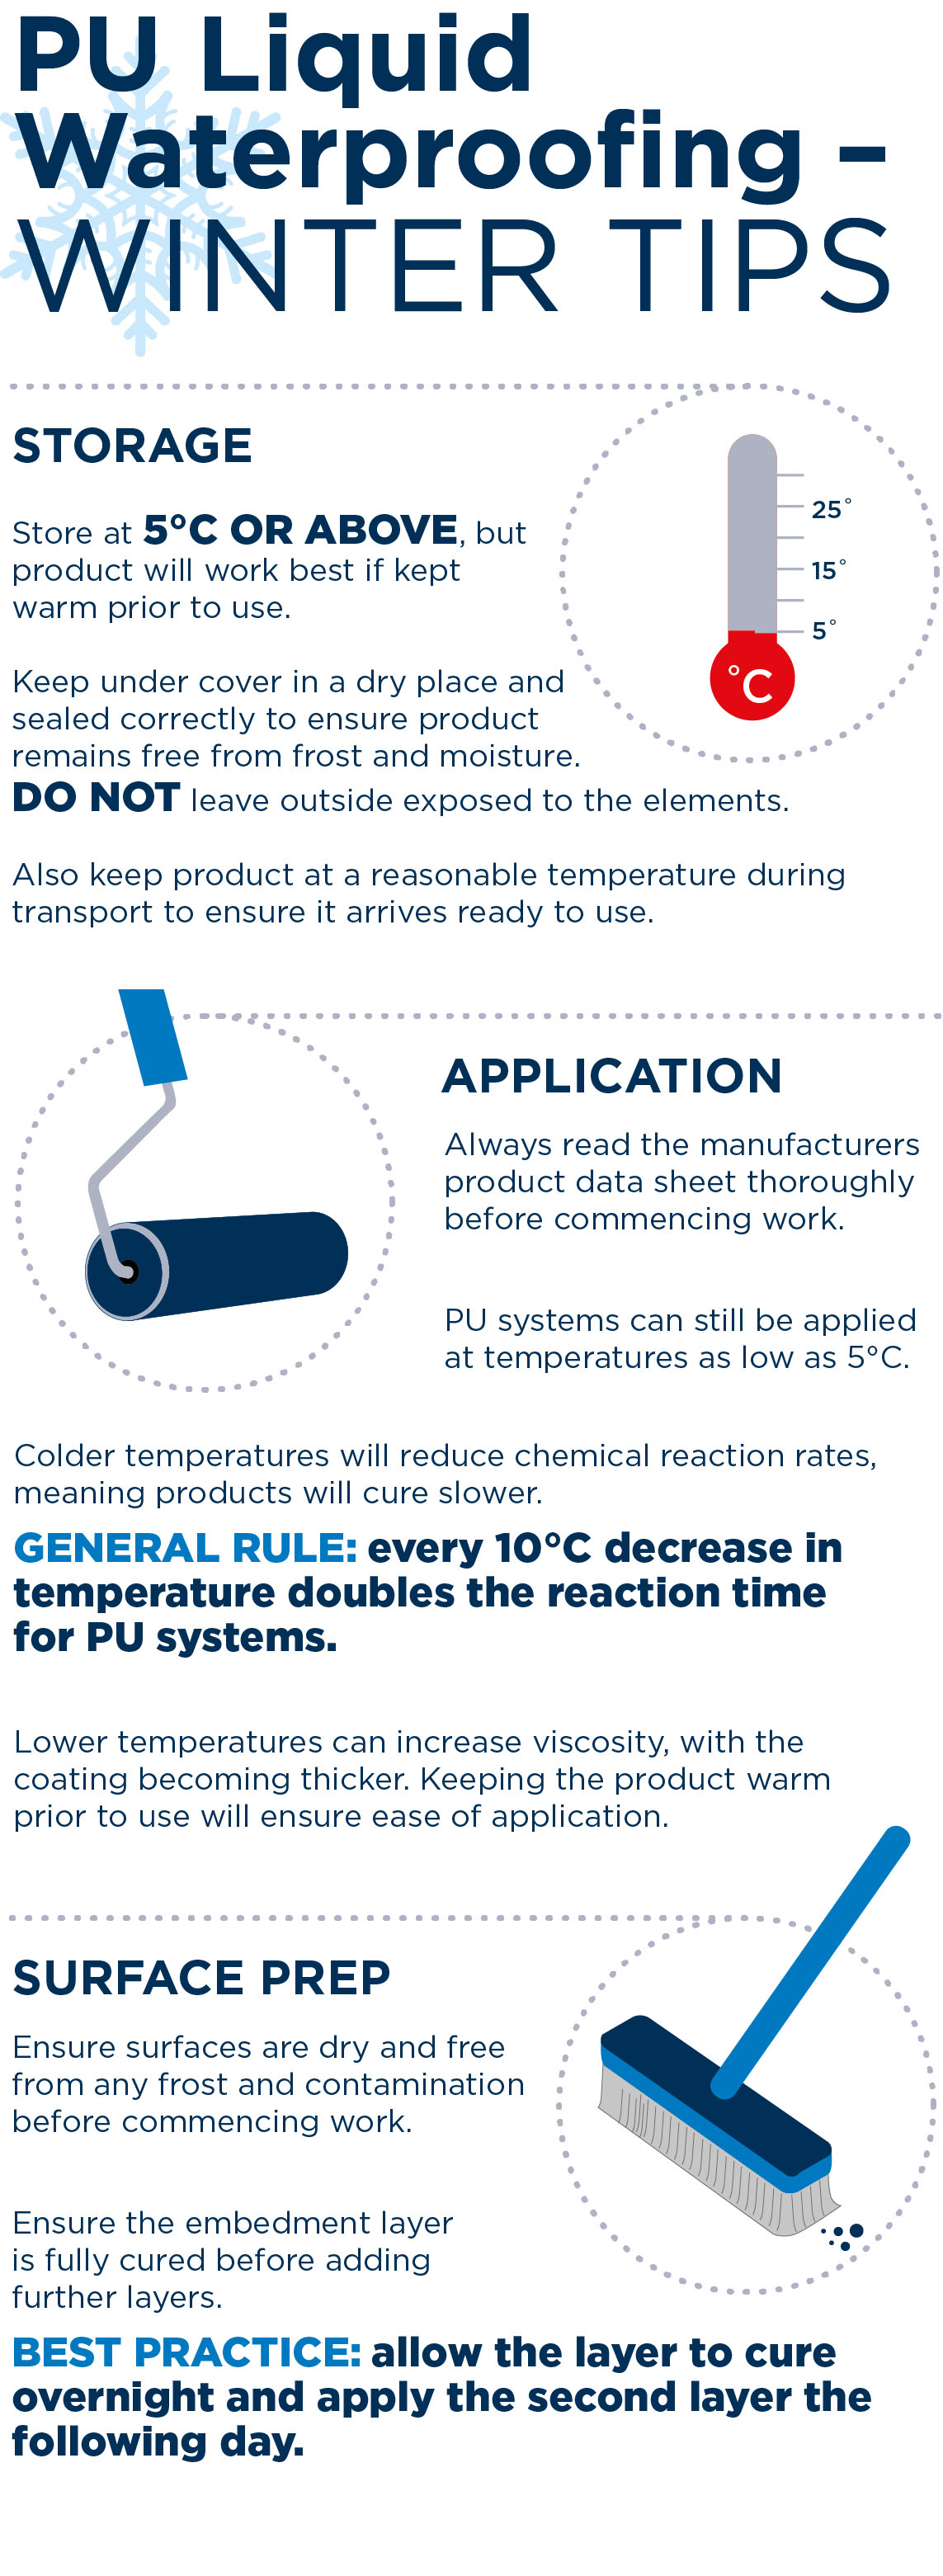 PU liquid waterproofing winter tips infographic